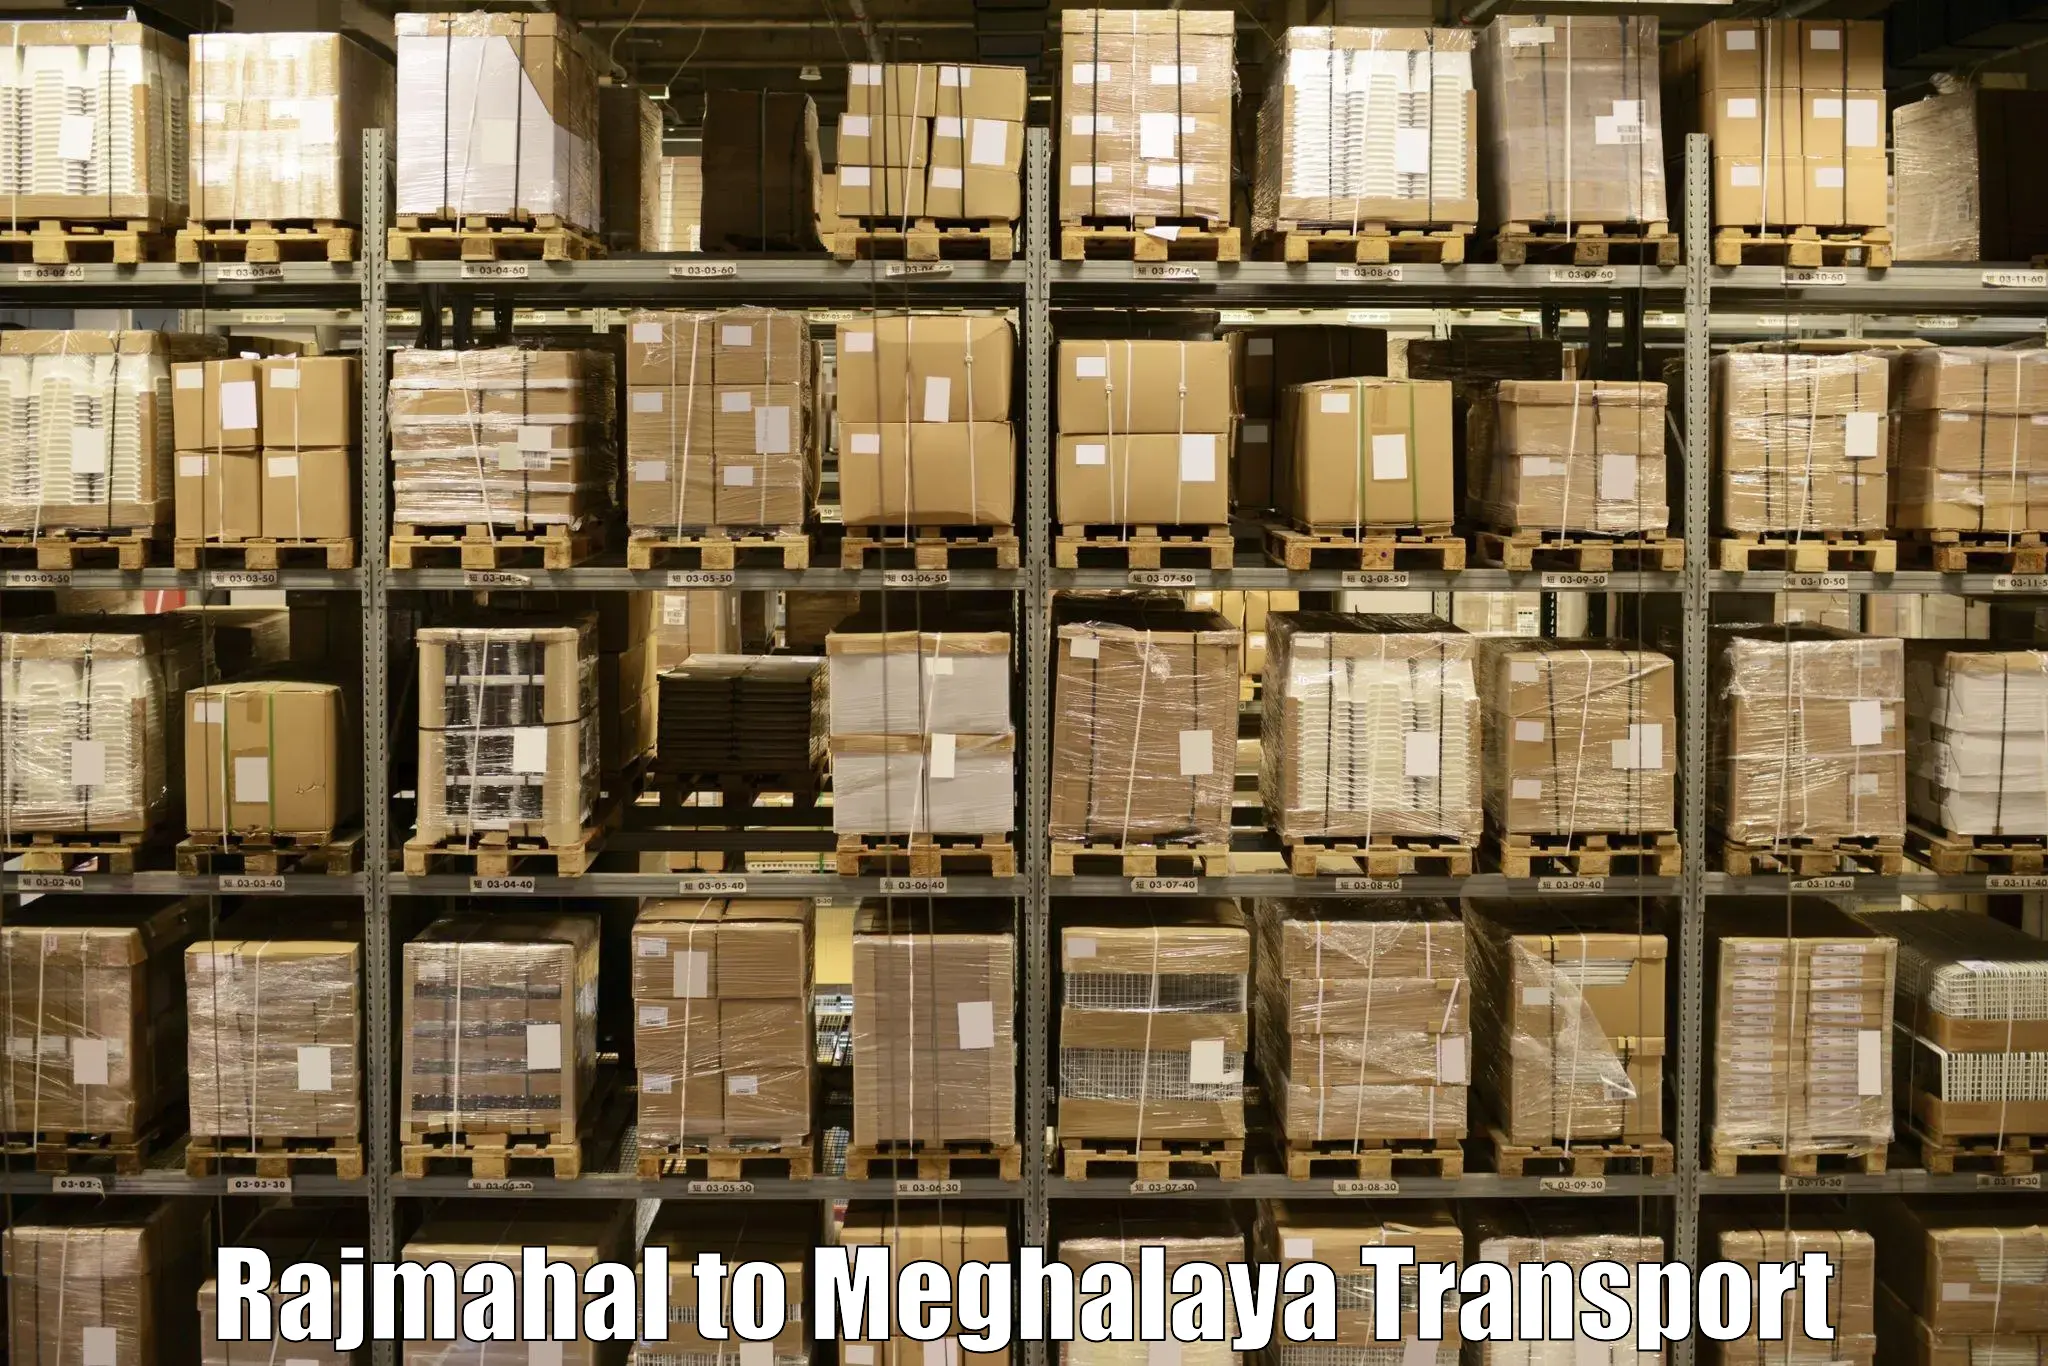 Cargo transport services Rajmahal to Meghalaya